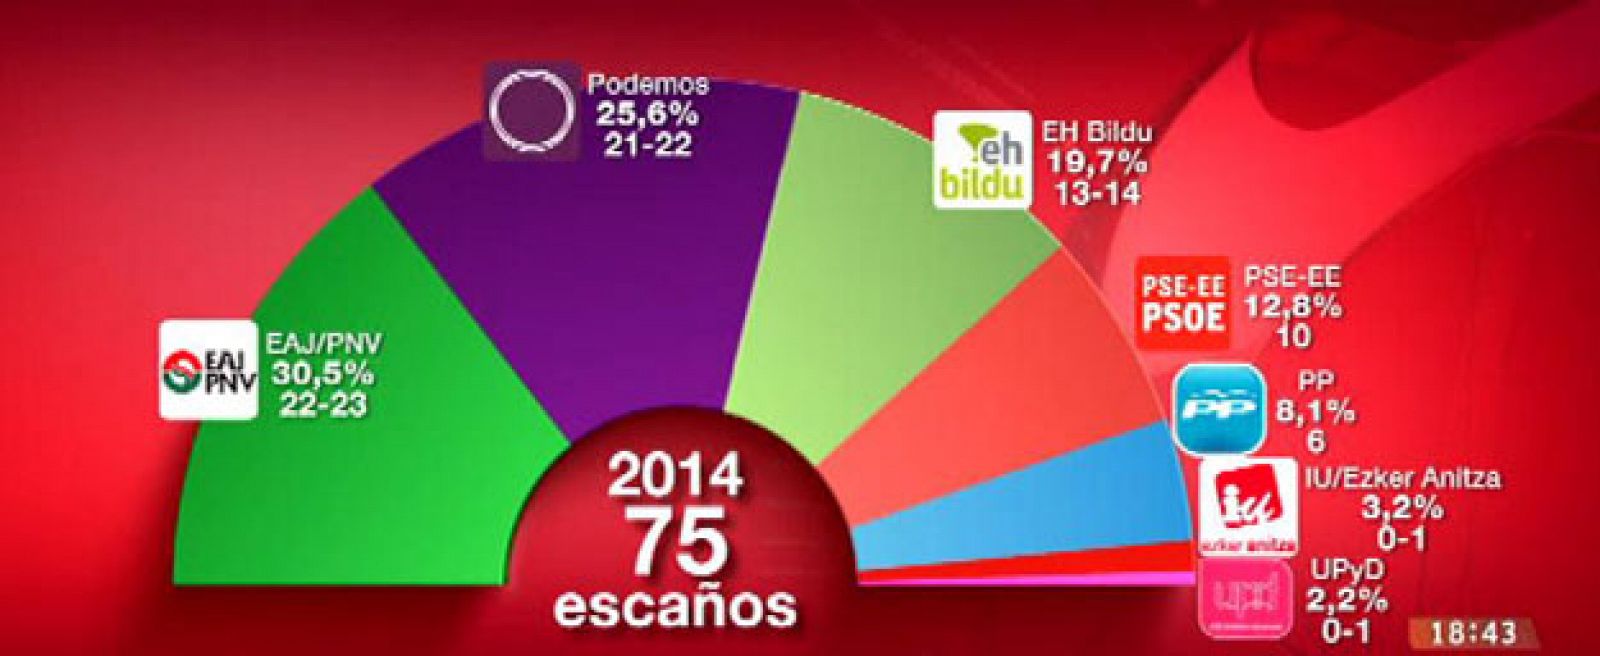 Resultados del Euskobarómetro para el Parlamento Vasco, correspondiente al segundo semestre de 2014.